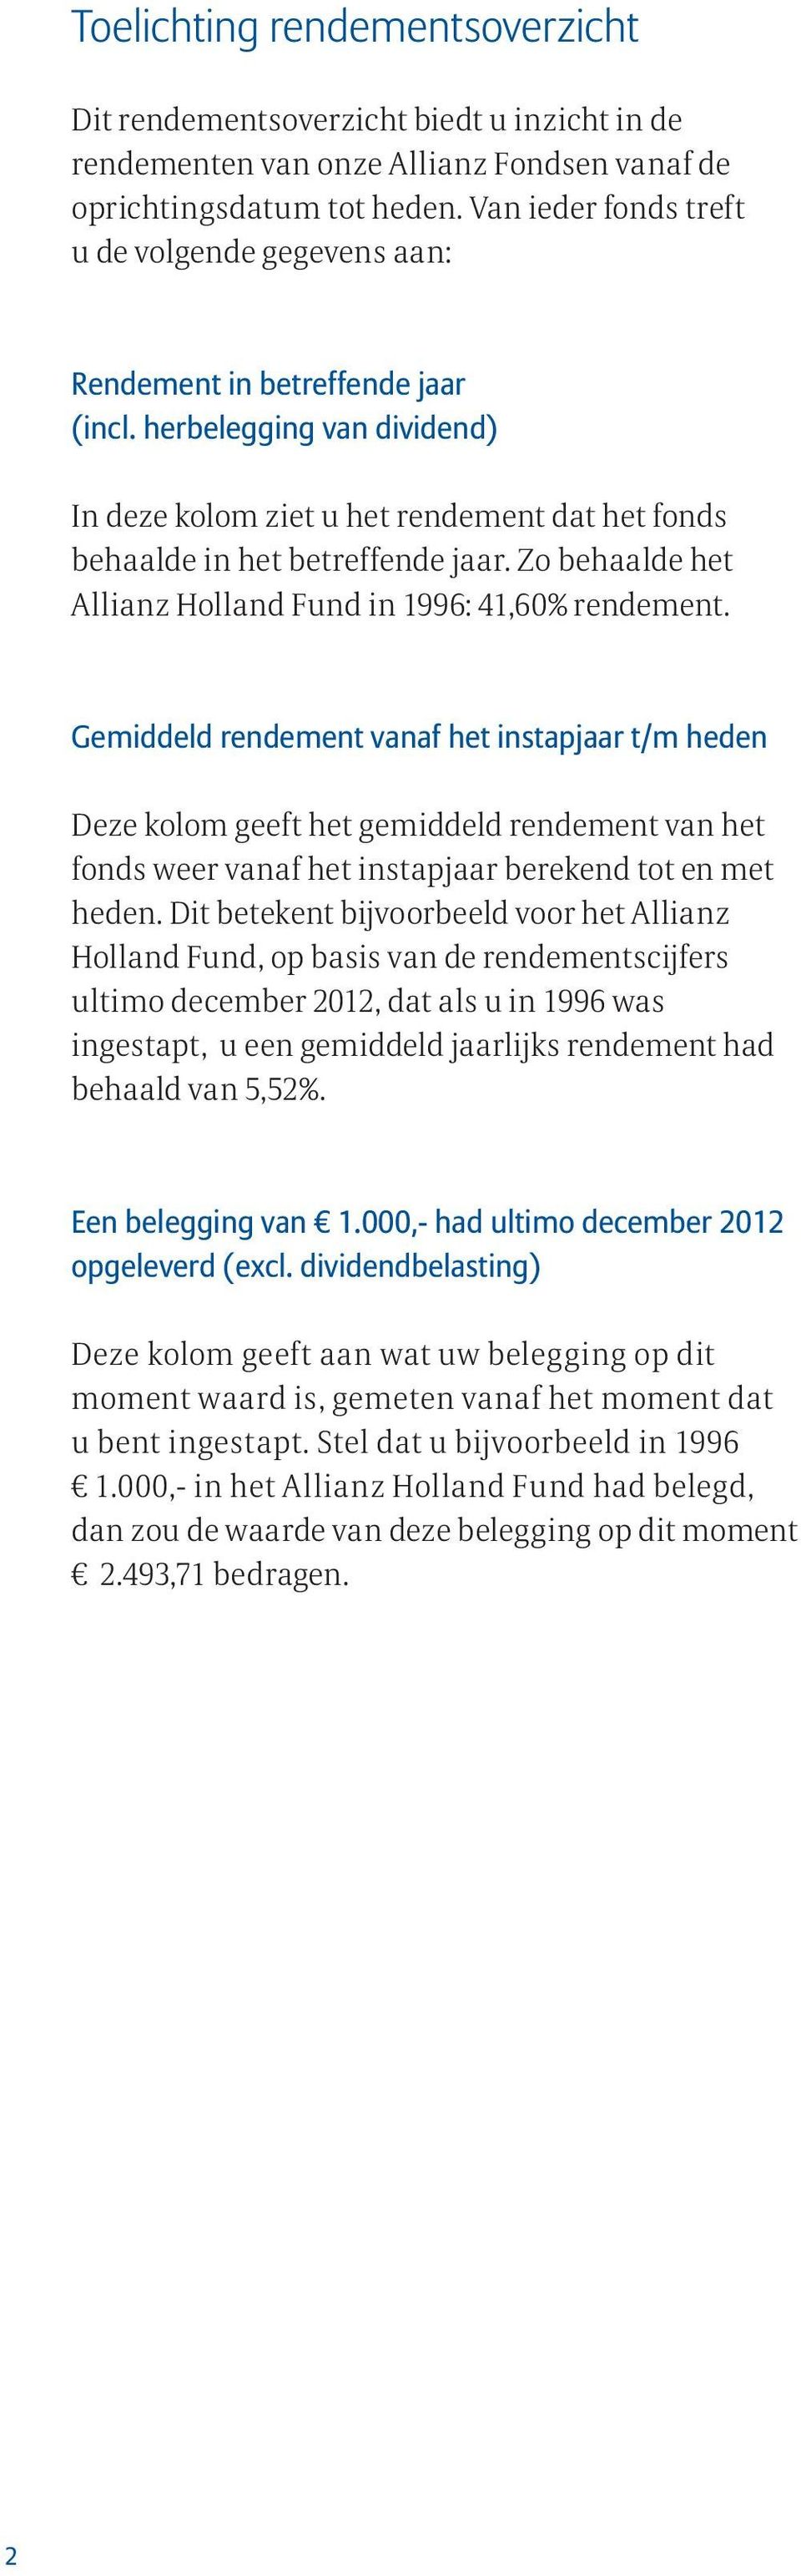 Zo behaalde het Allianz Holland Fund in 1996: 41,60% rendement.